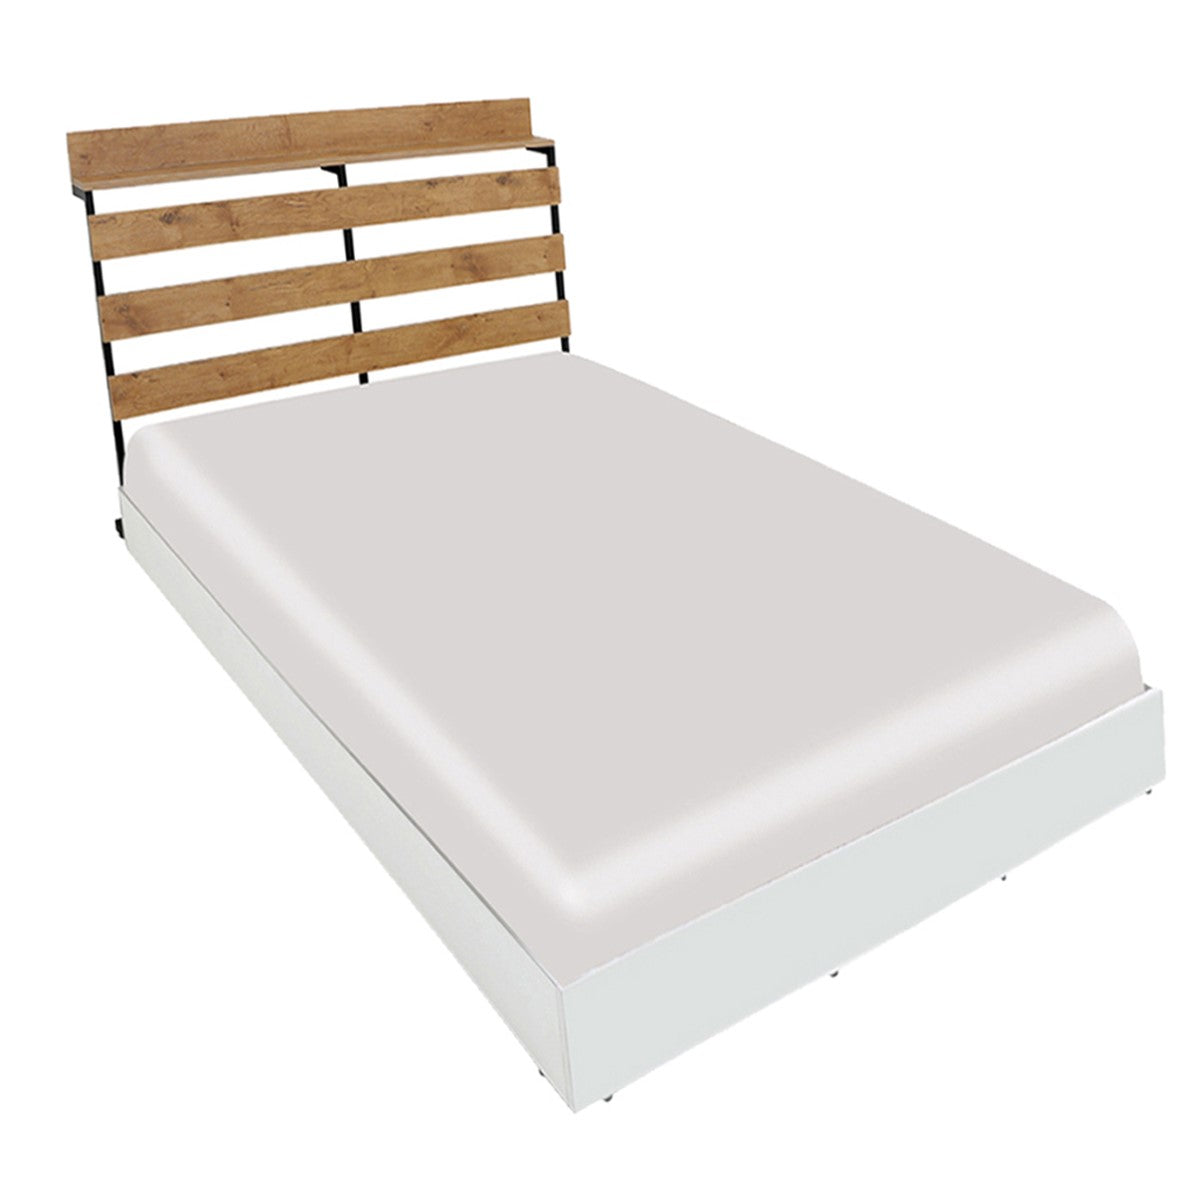 Mack Single Floor Bed